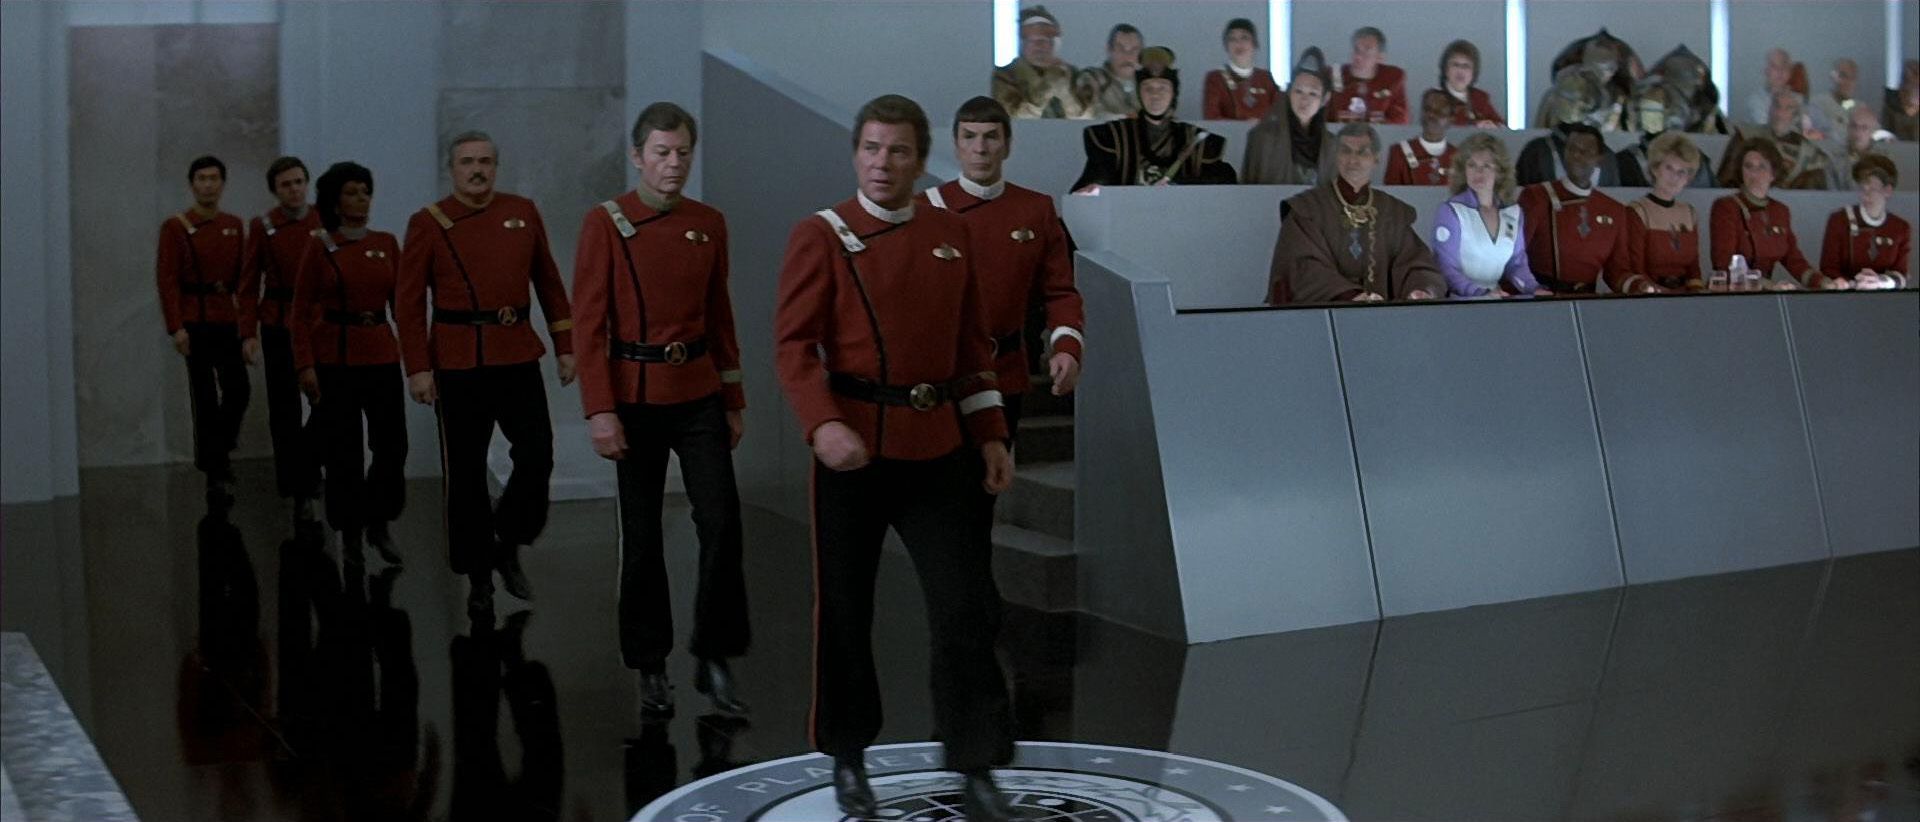 Star Trek The Voyage Home